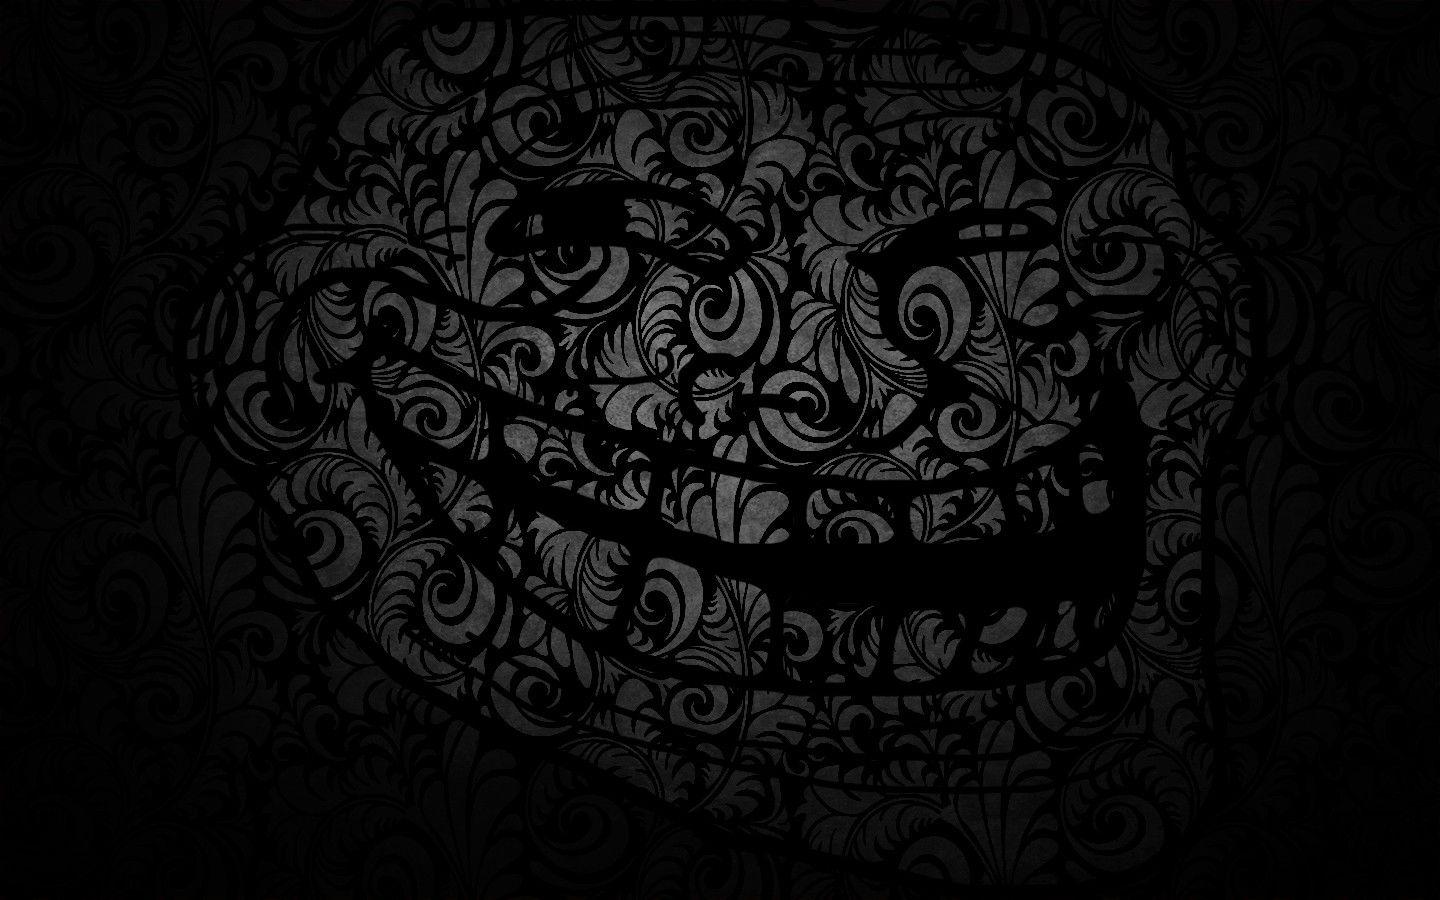 Troll Face Meme HD Wallpaper Tottaly Black